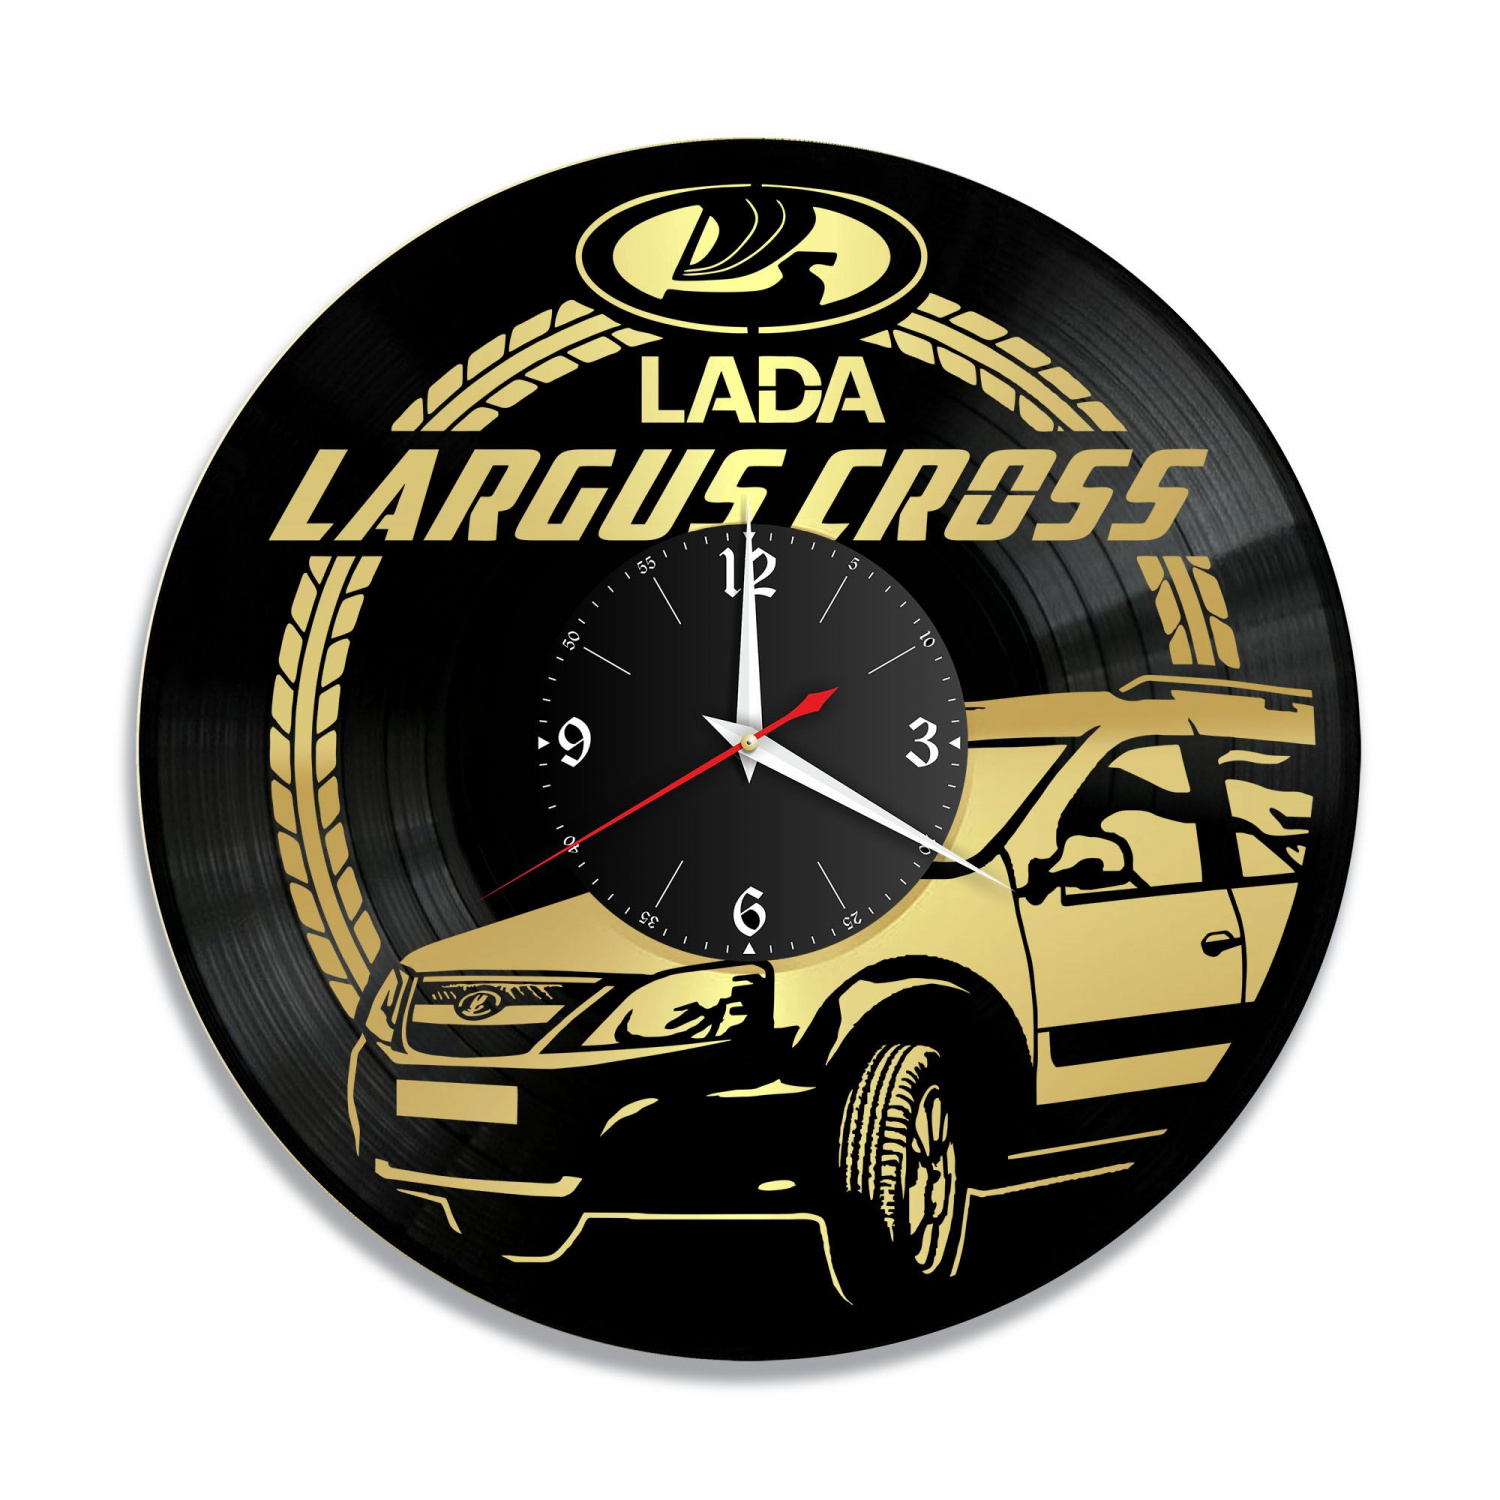 Часы настенные "Lada Largus Cross, золото" из винила, №2 VC-10418-1